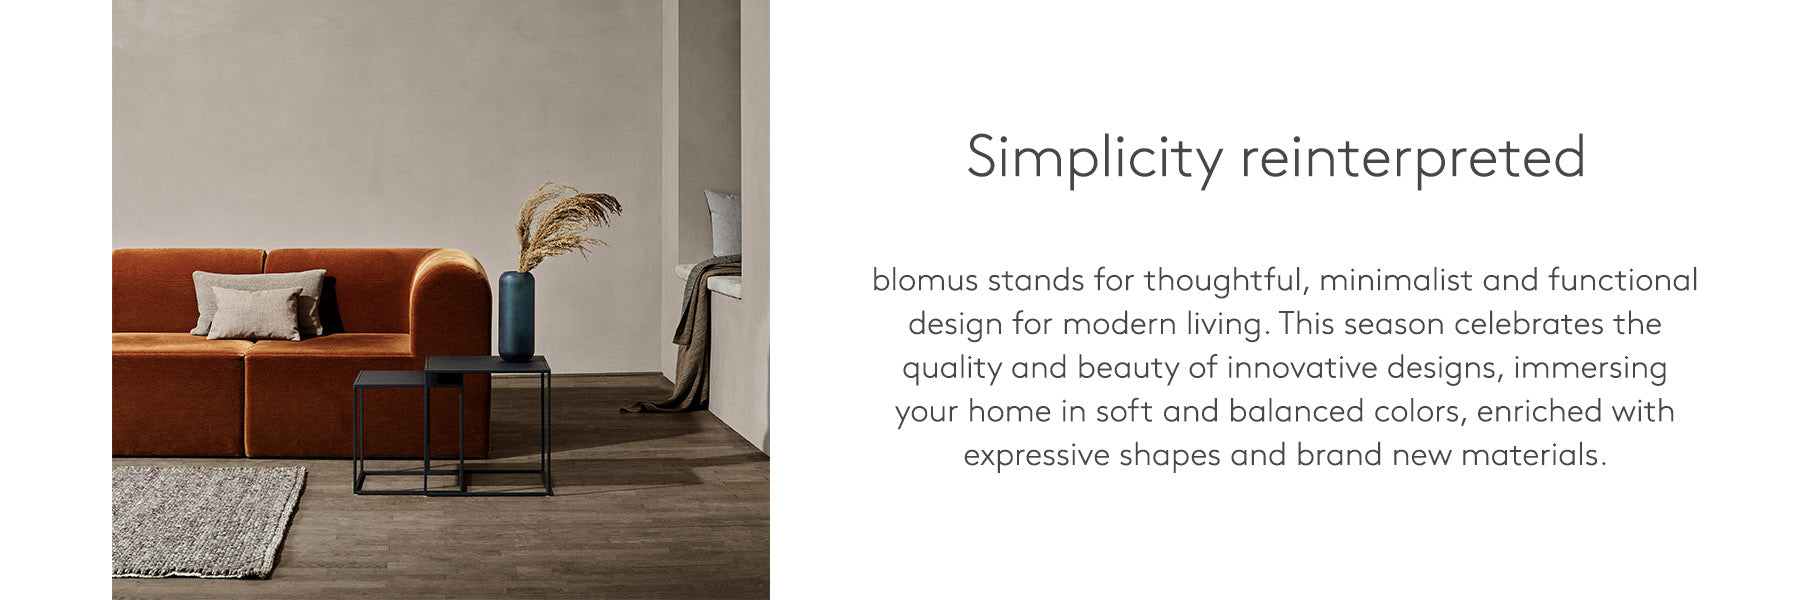 Blomus | Offical Site of International Modern Home Decor – blomus